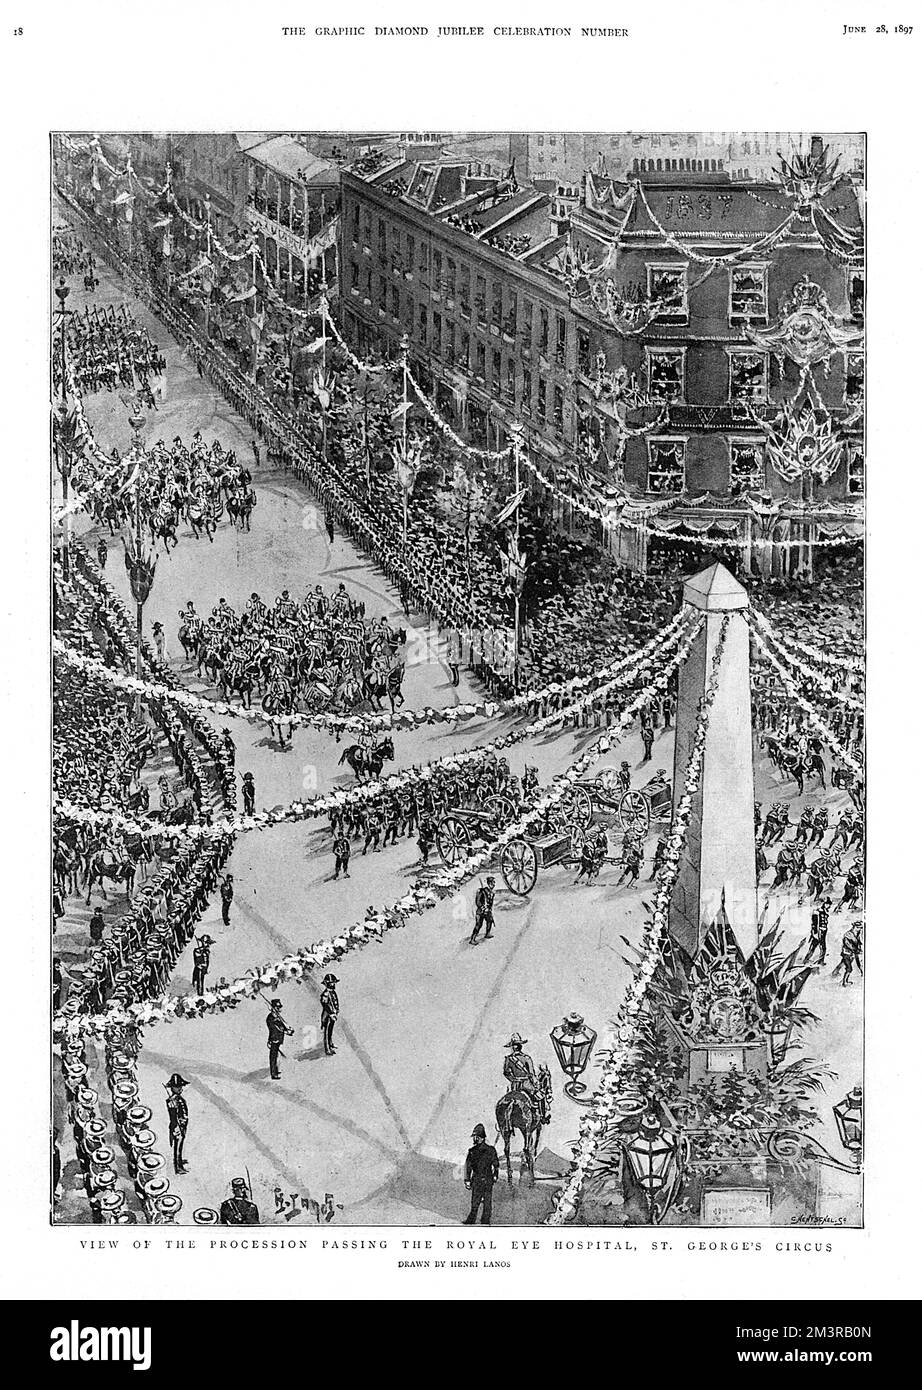 Vue aérienne des célébrations du Jubilé de la reine Victoria le 20 juin 1897, avec le cortège passant devant l'hôpital Royal Eye, le Cirque St George. Date : 20 juin 1897 Banque D'Images